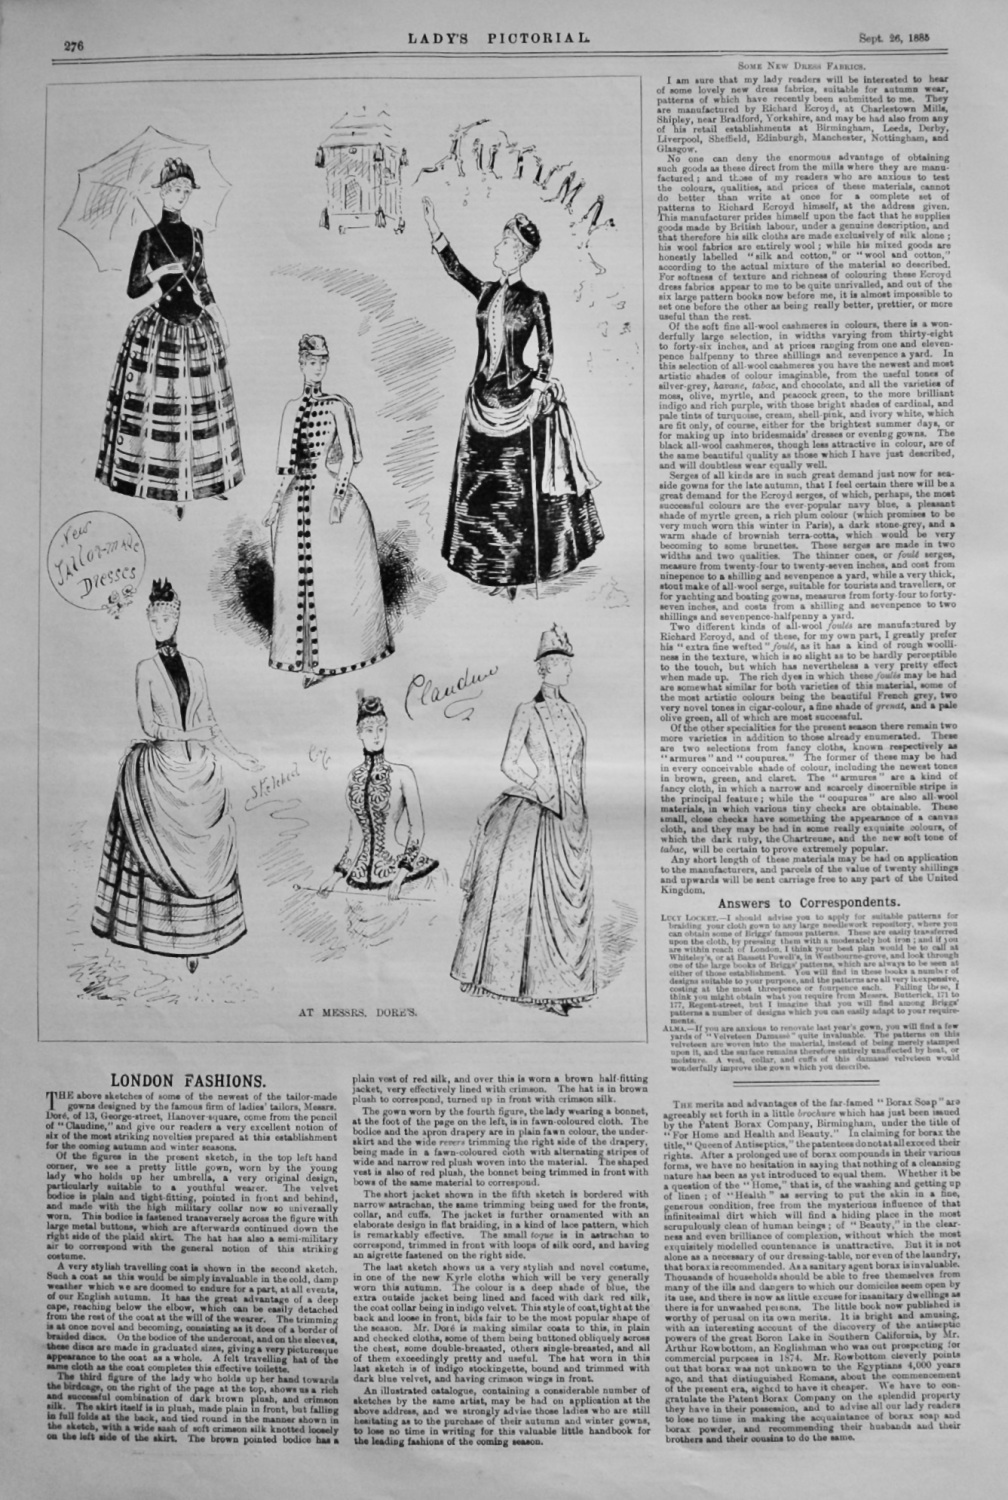 London Fashions.  1885.